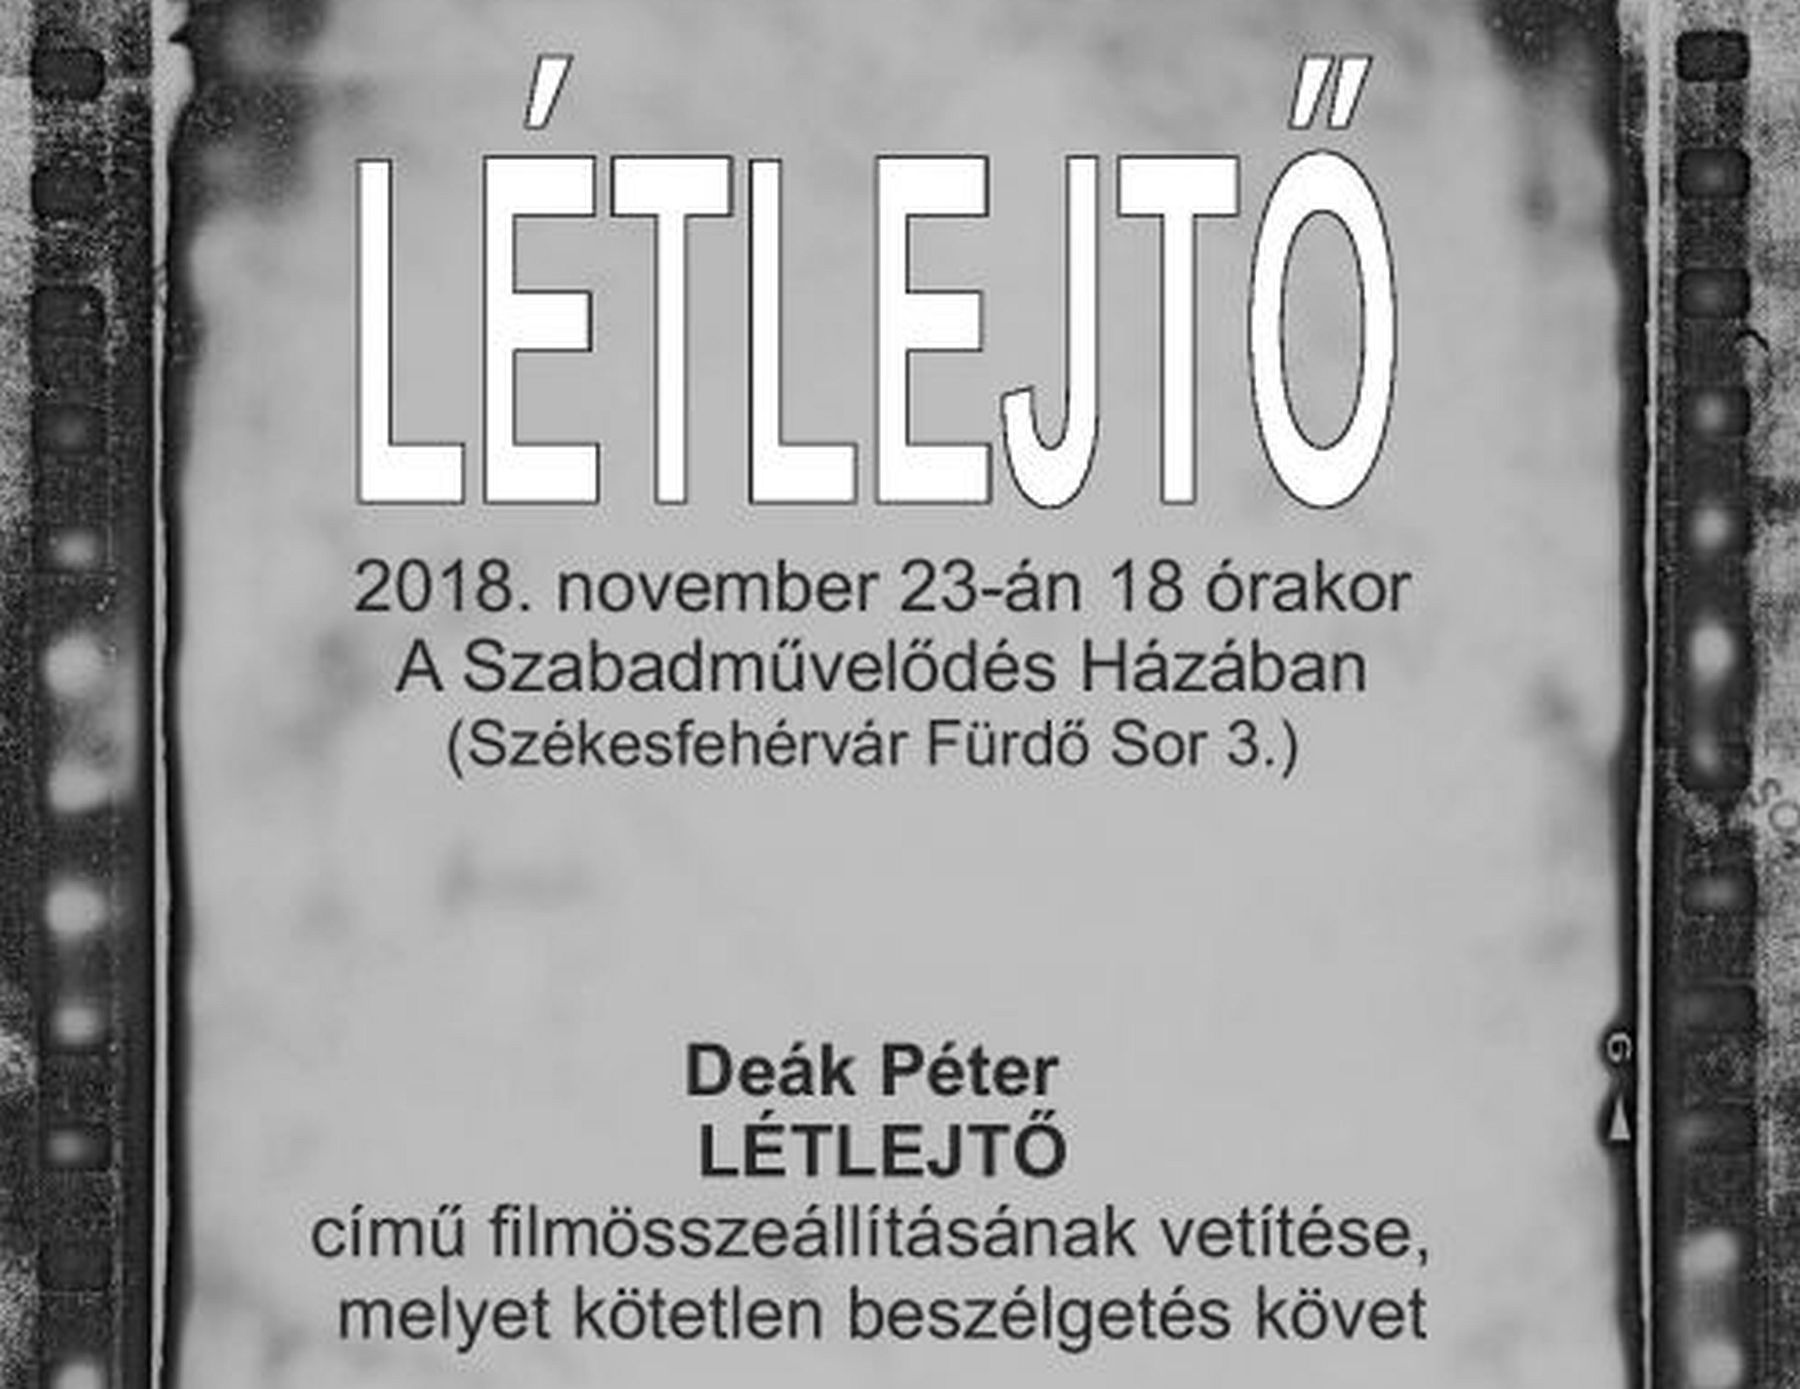 Létlejtő - Deák Péter filmösszeállítását vetítik A Szabadművelődés Házában